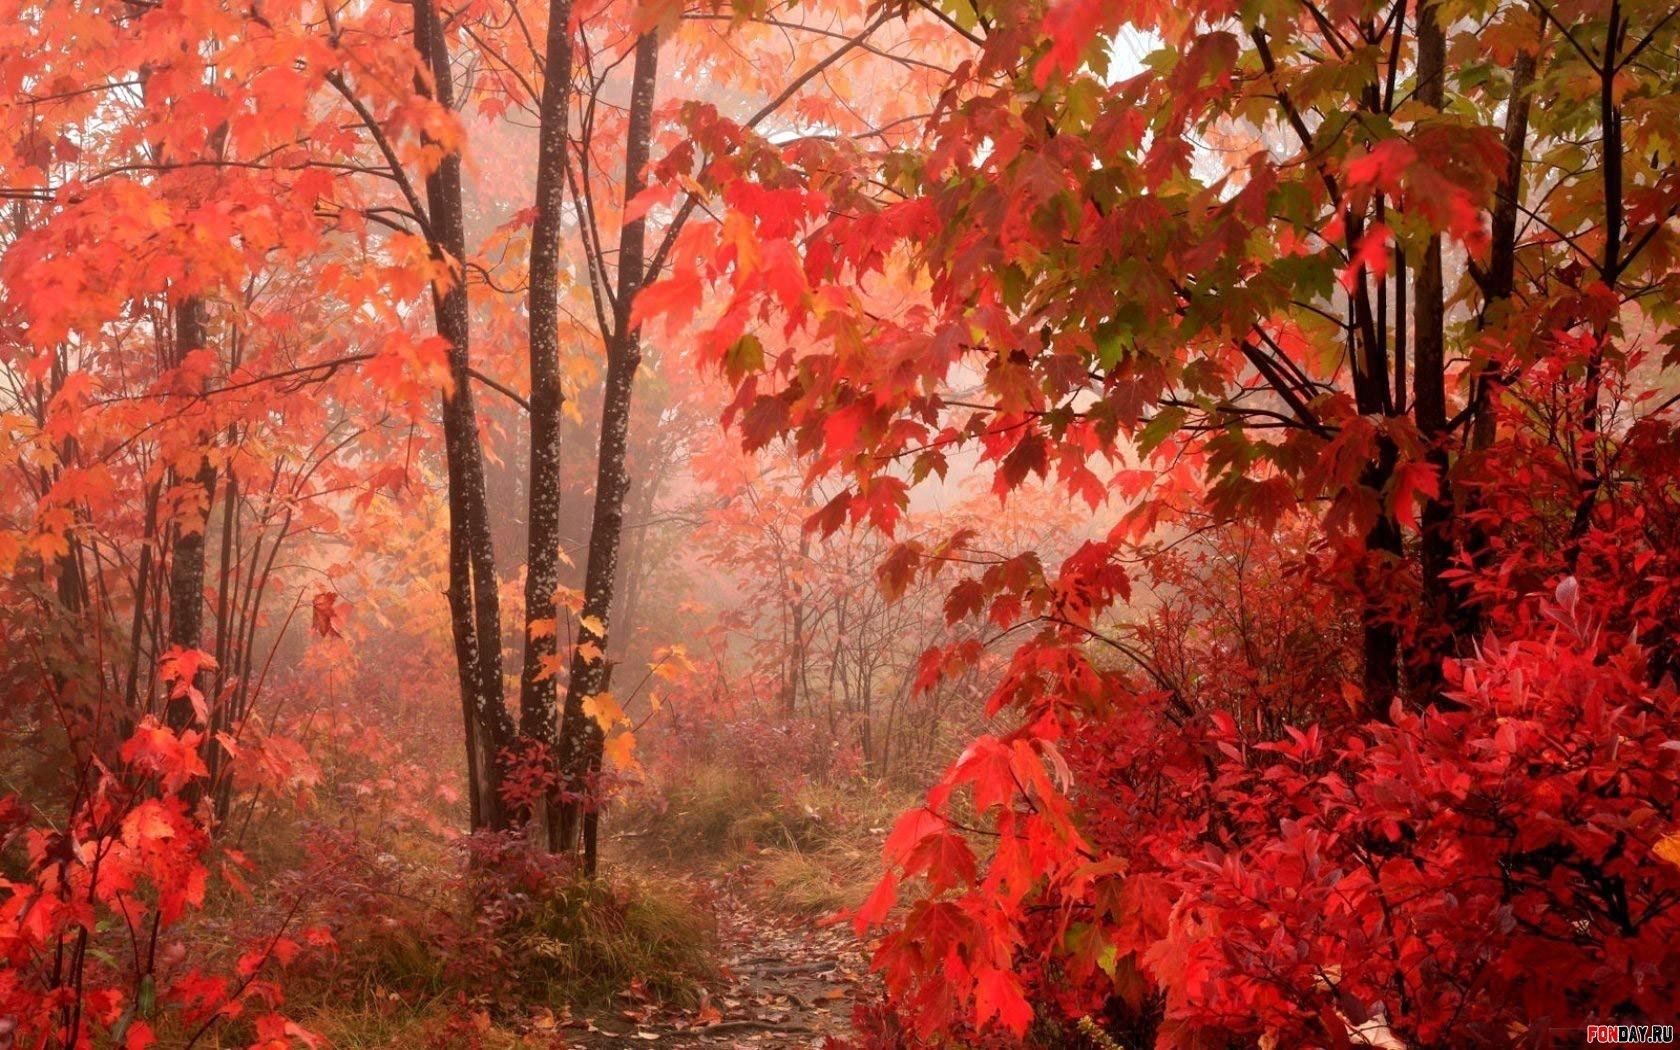 Vjeshtë e kuqe në pyll